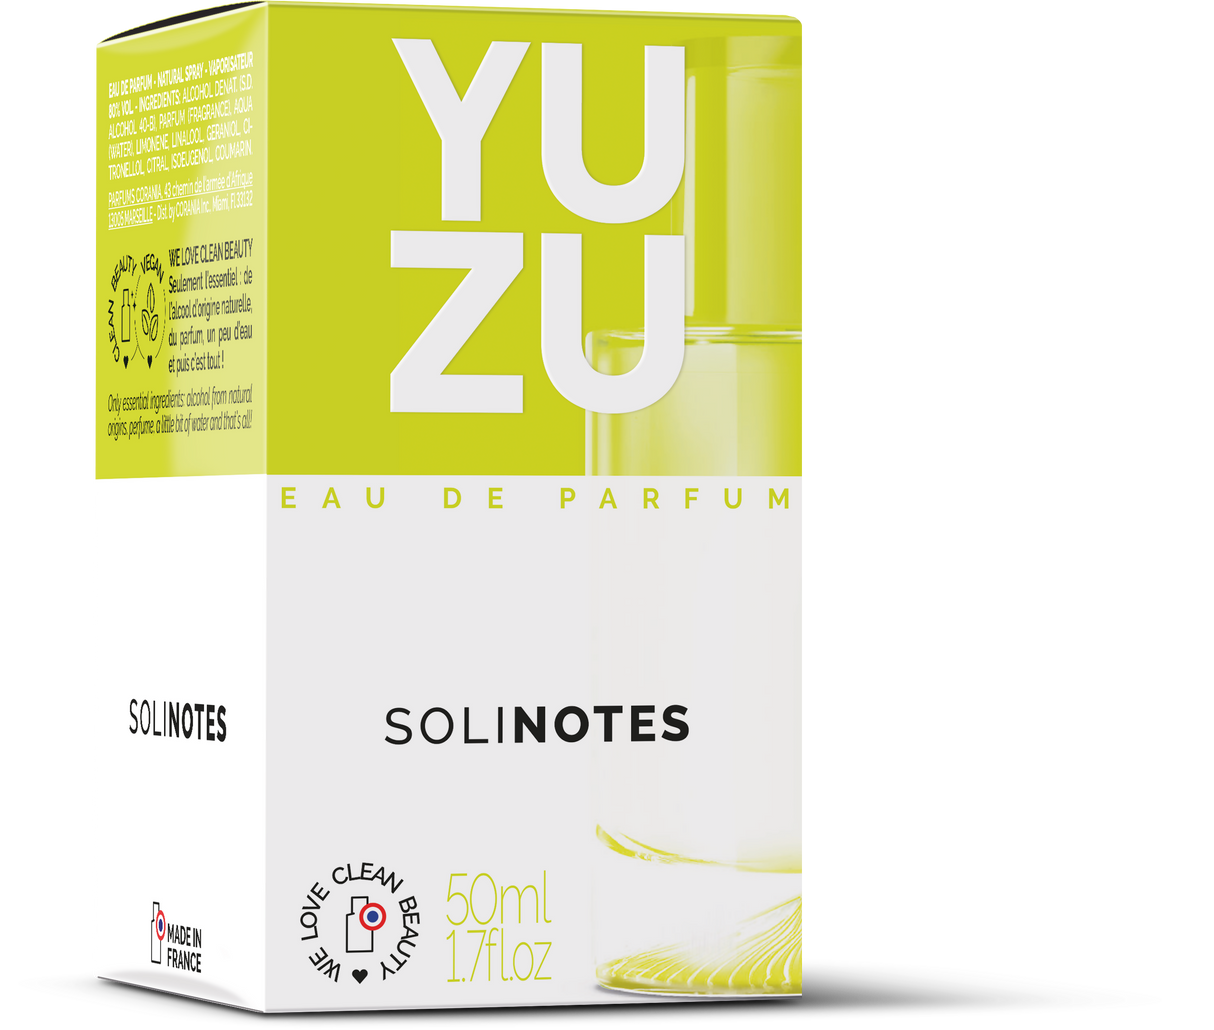 Solinotes - Yuzu Eau de Parfum 1.7 oz - CLEAN BEAUTY